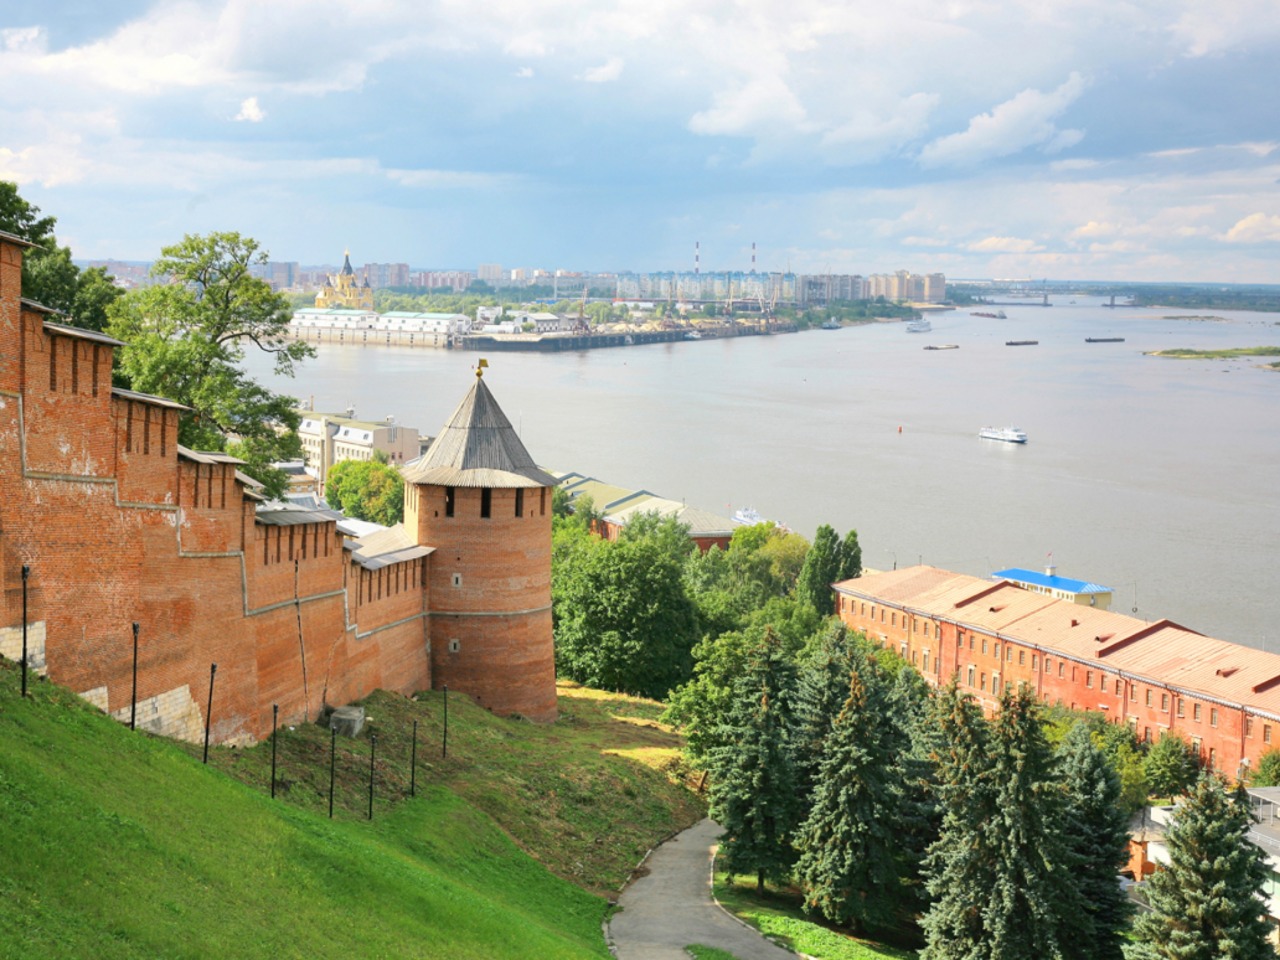 Нижний Новгород. Восемьсот лет истории | Цена 6250₽, отзывы, описание экскурсии